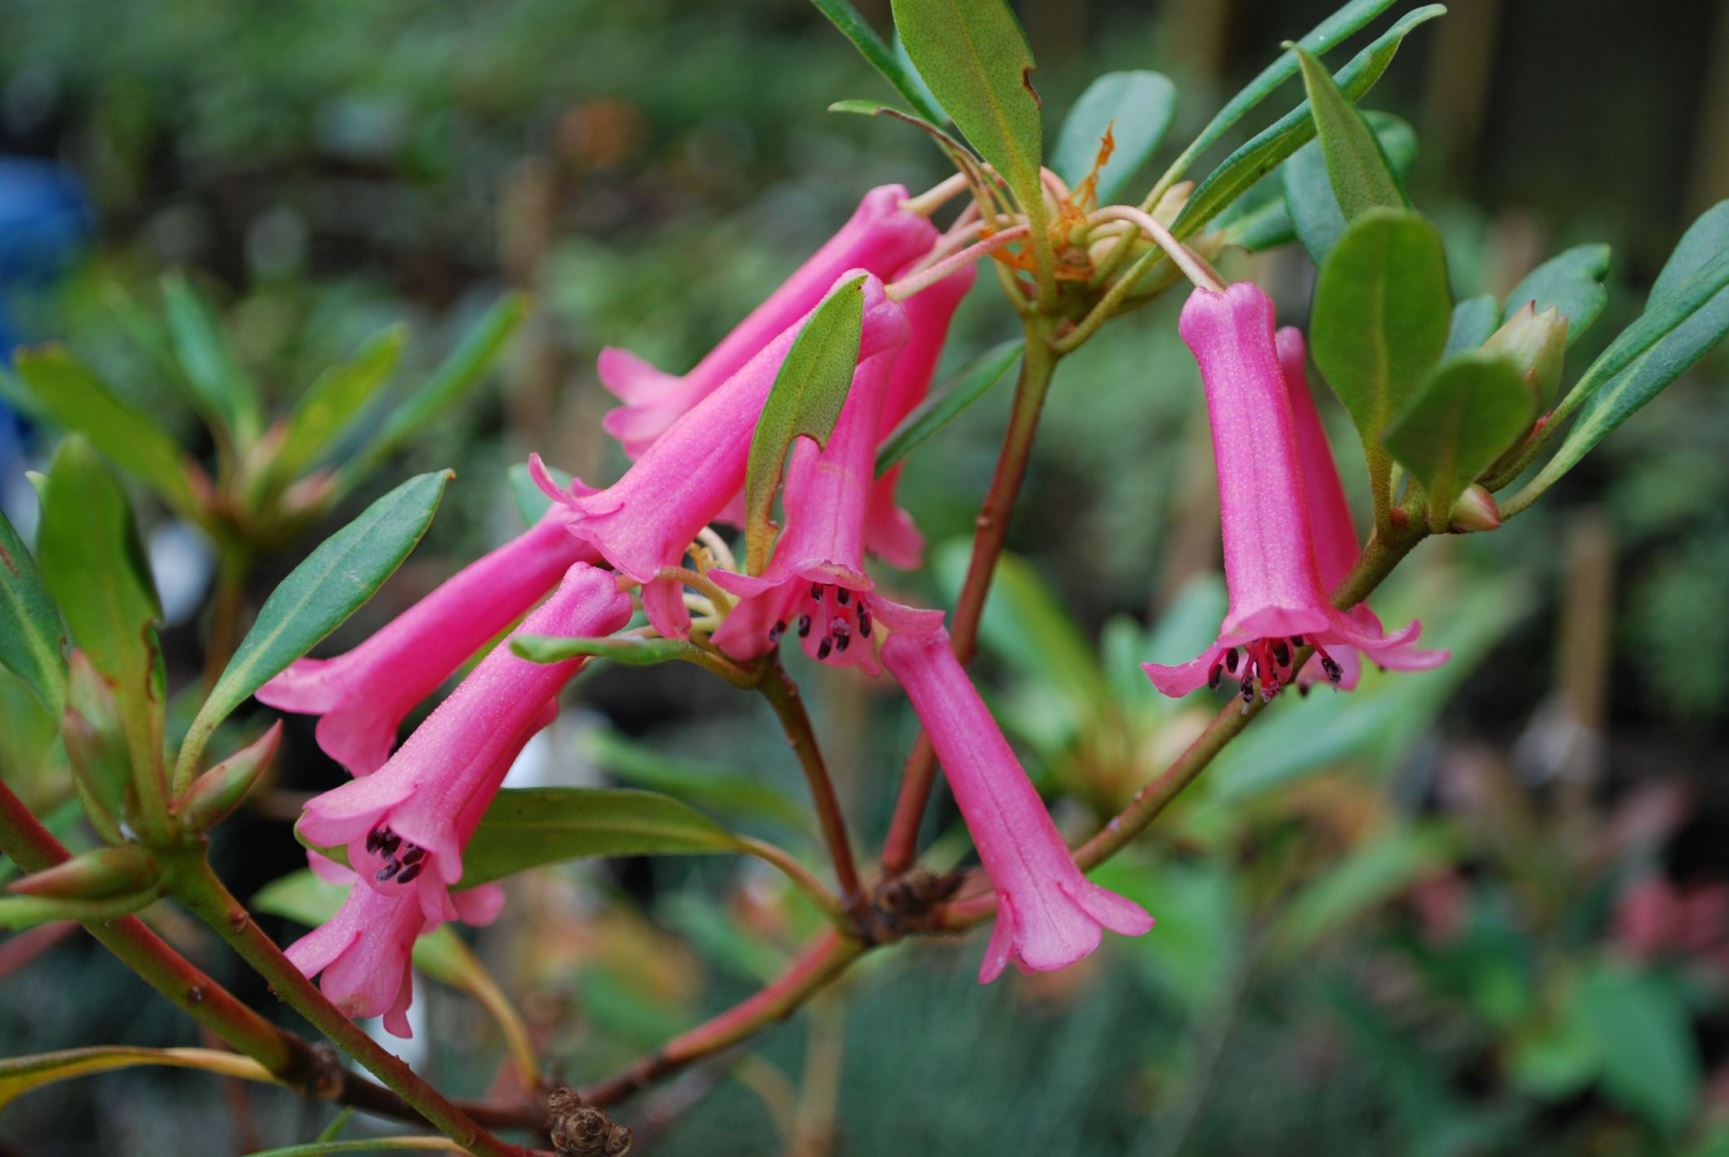 Rhododendron caliginis (Vireya) × R. vitis-idaea (Vireya)